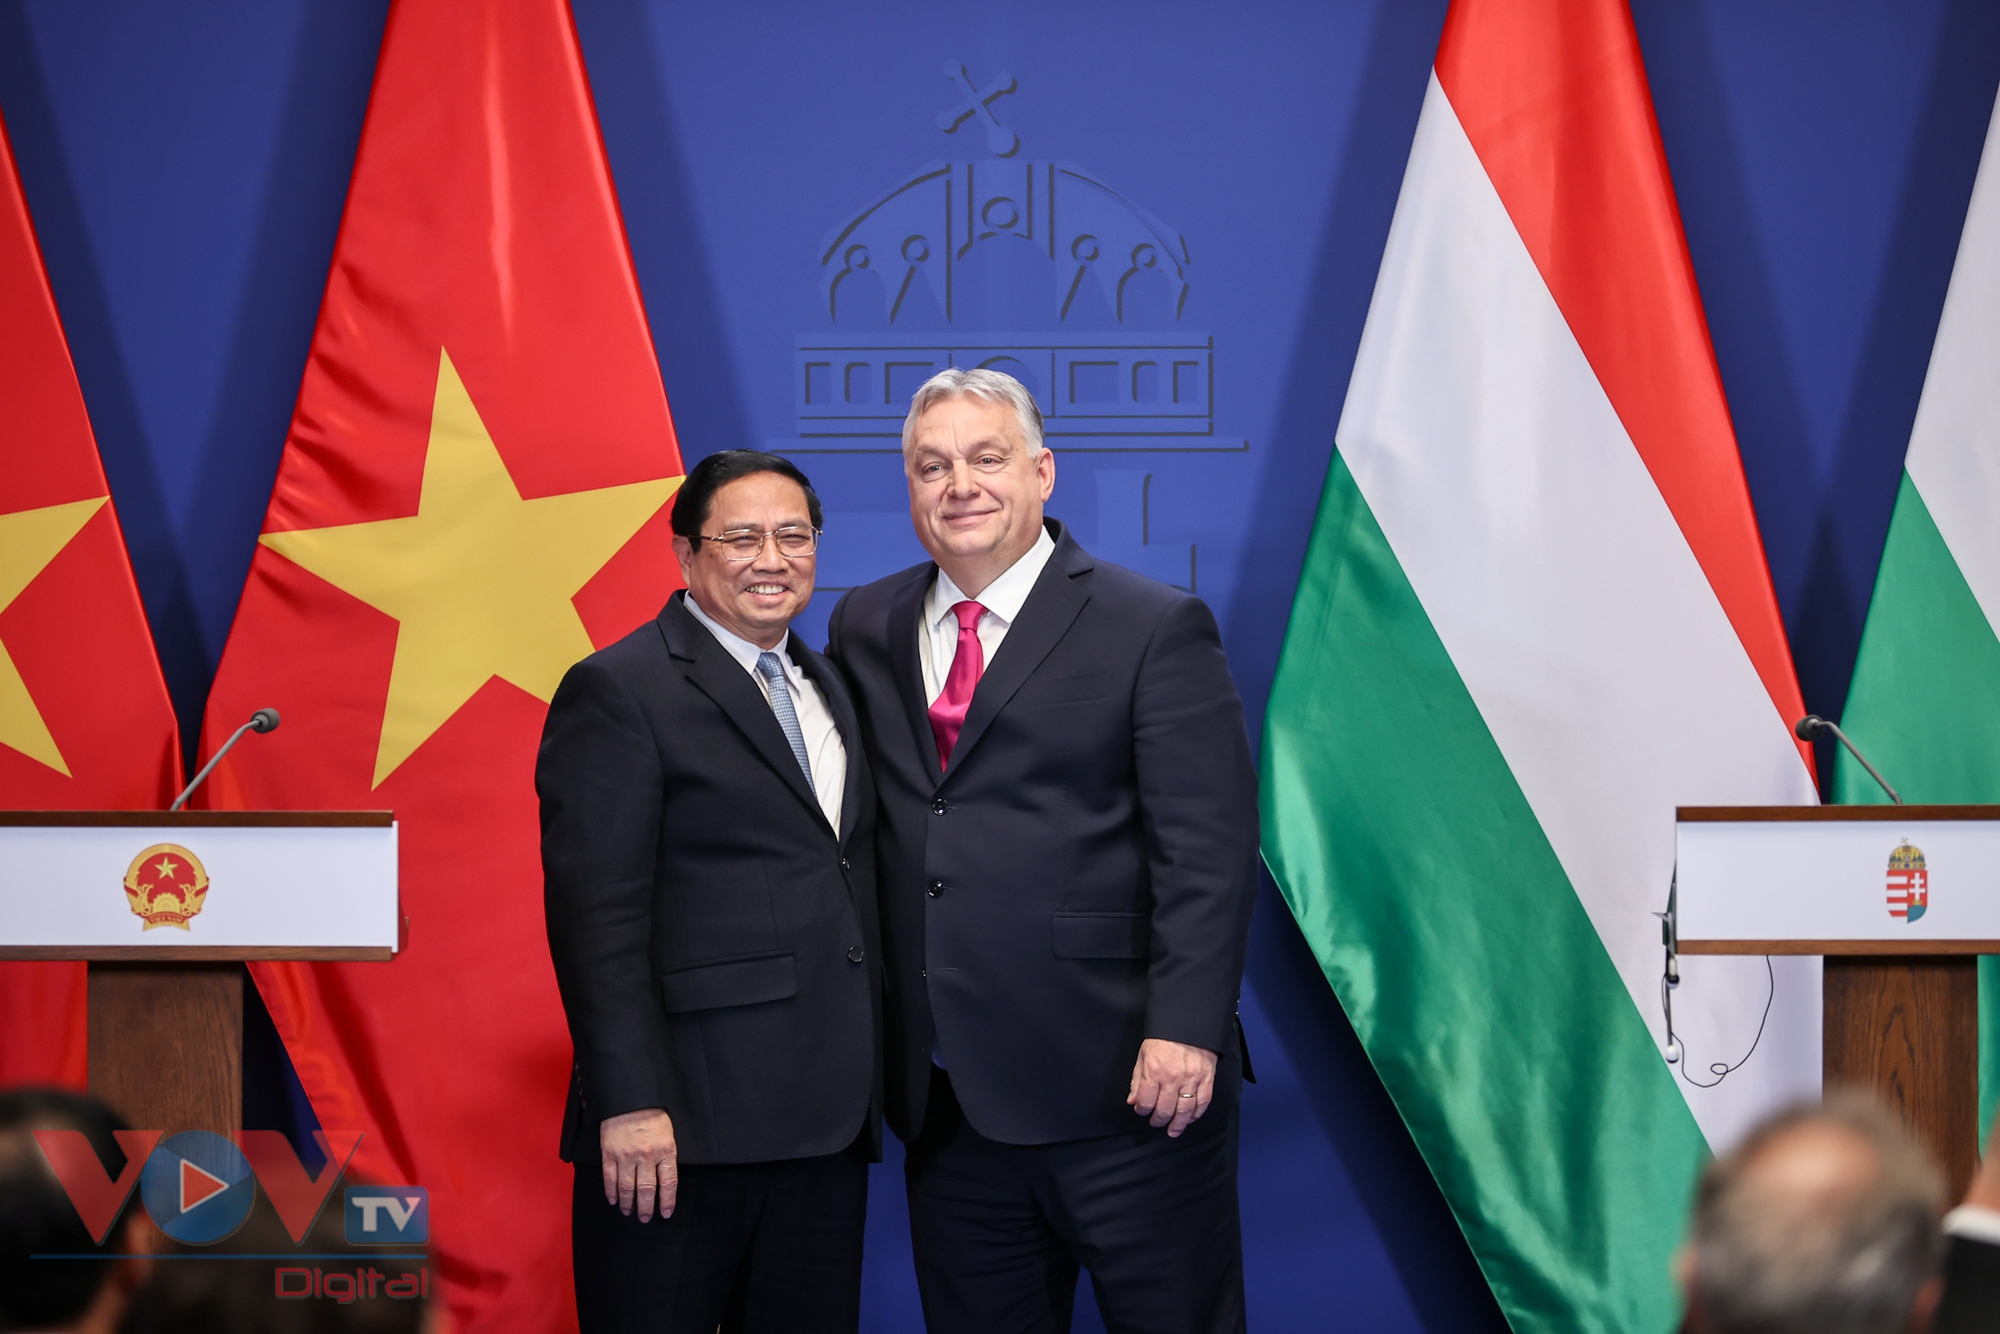 Thủ tướng Việt Nam và Thủ tướng Hungary gặp gỡ báo chí và chứng kiến lễ ký kết các văn kiện hợp tác- Ảnh 4.